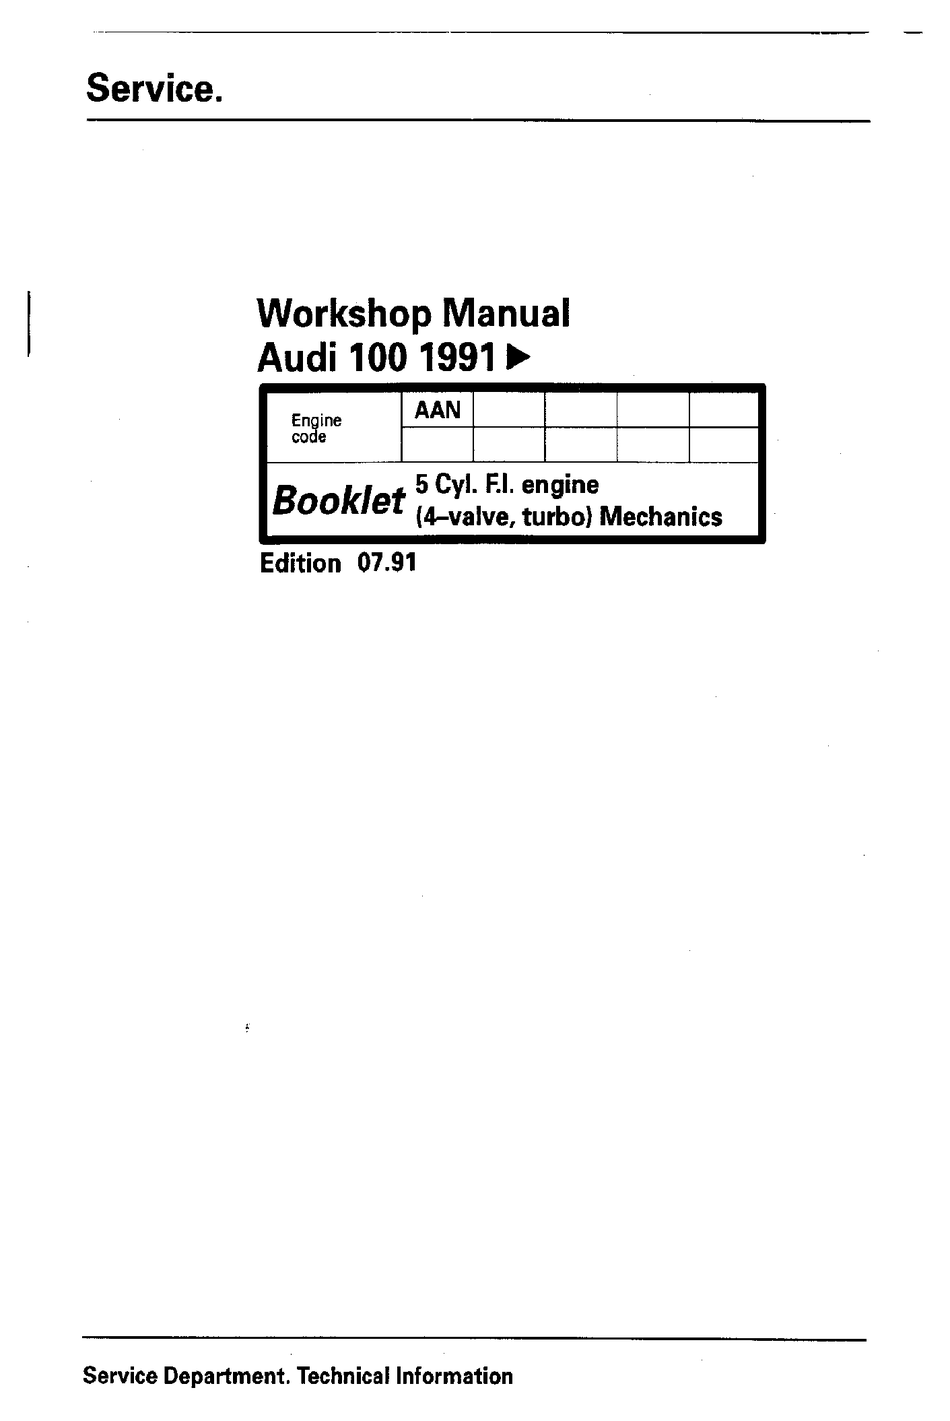 Betriebsanleitung AUDI 100 Handbuch Mappe Ausgabe 1991 